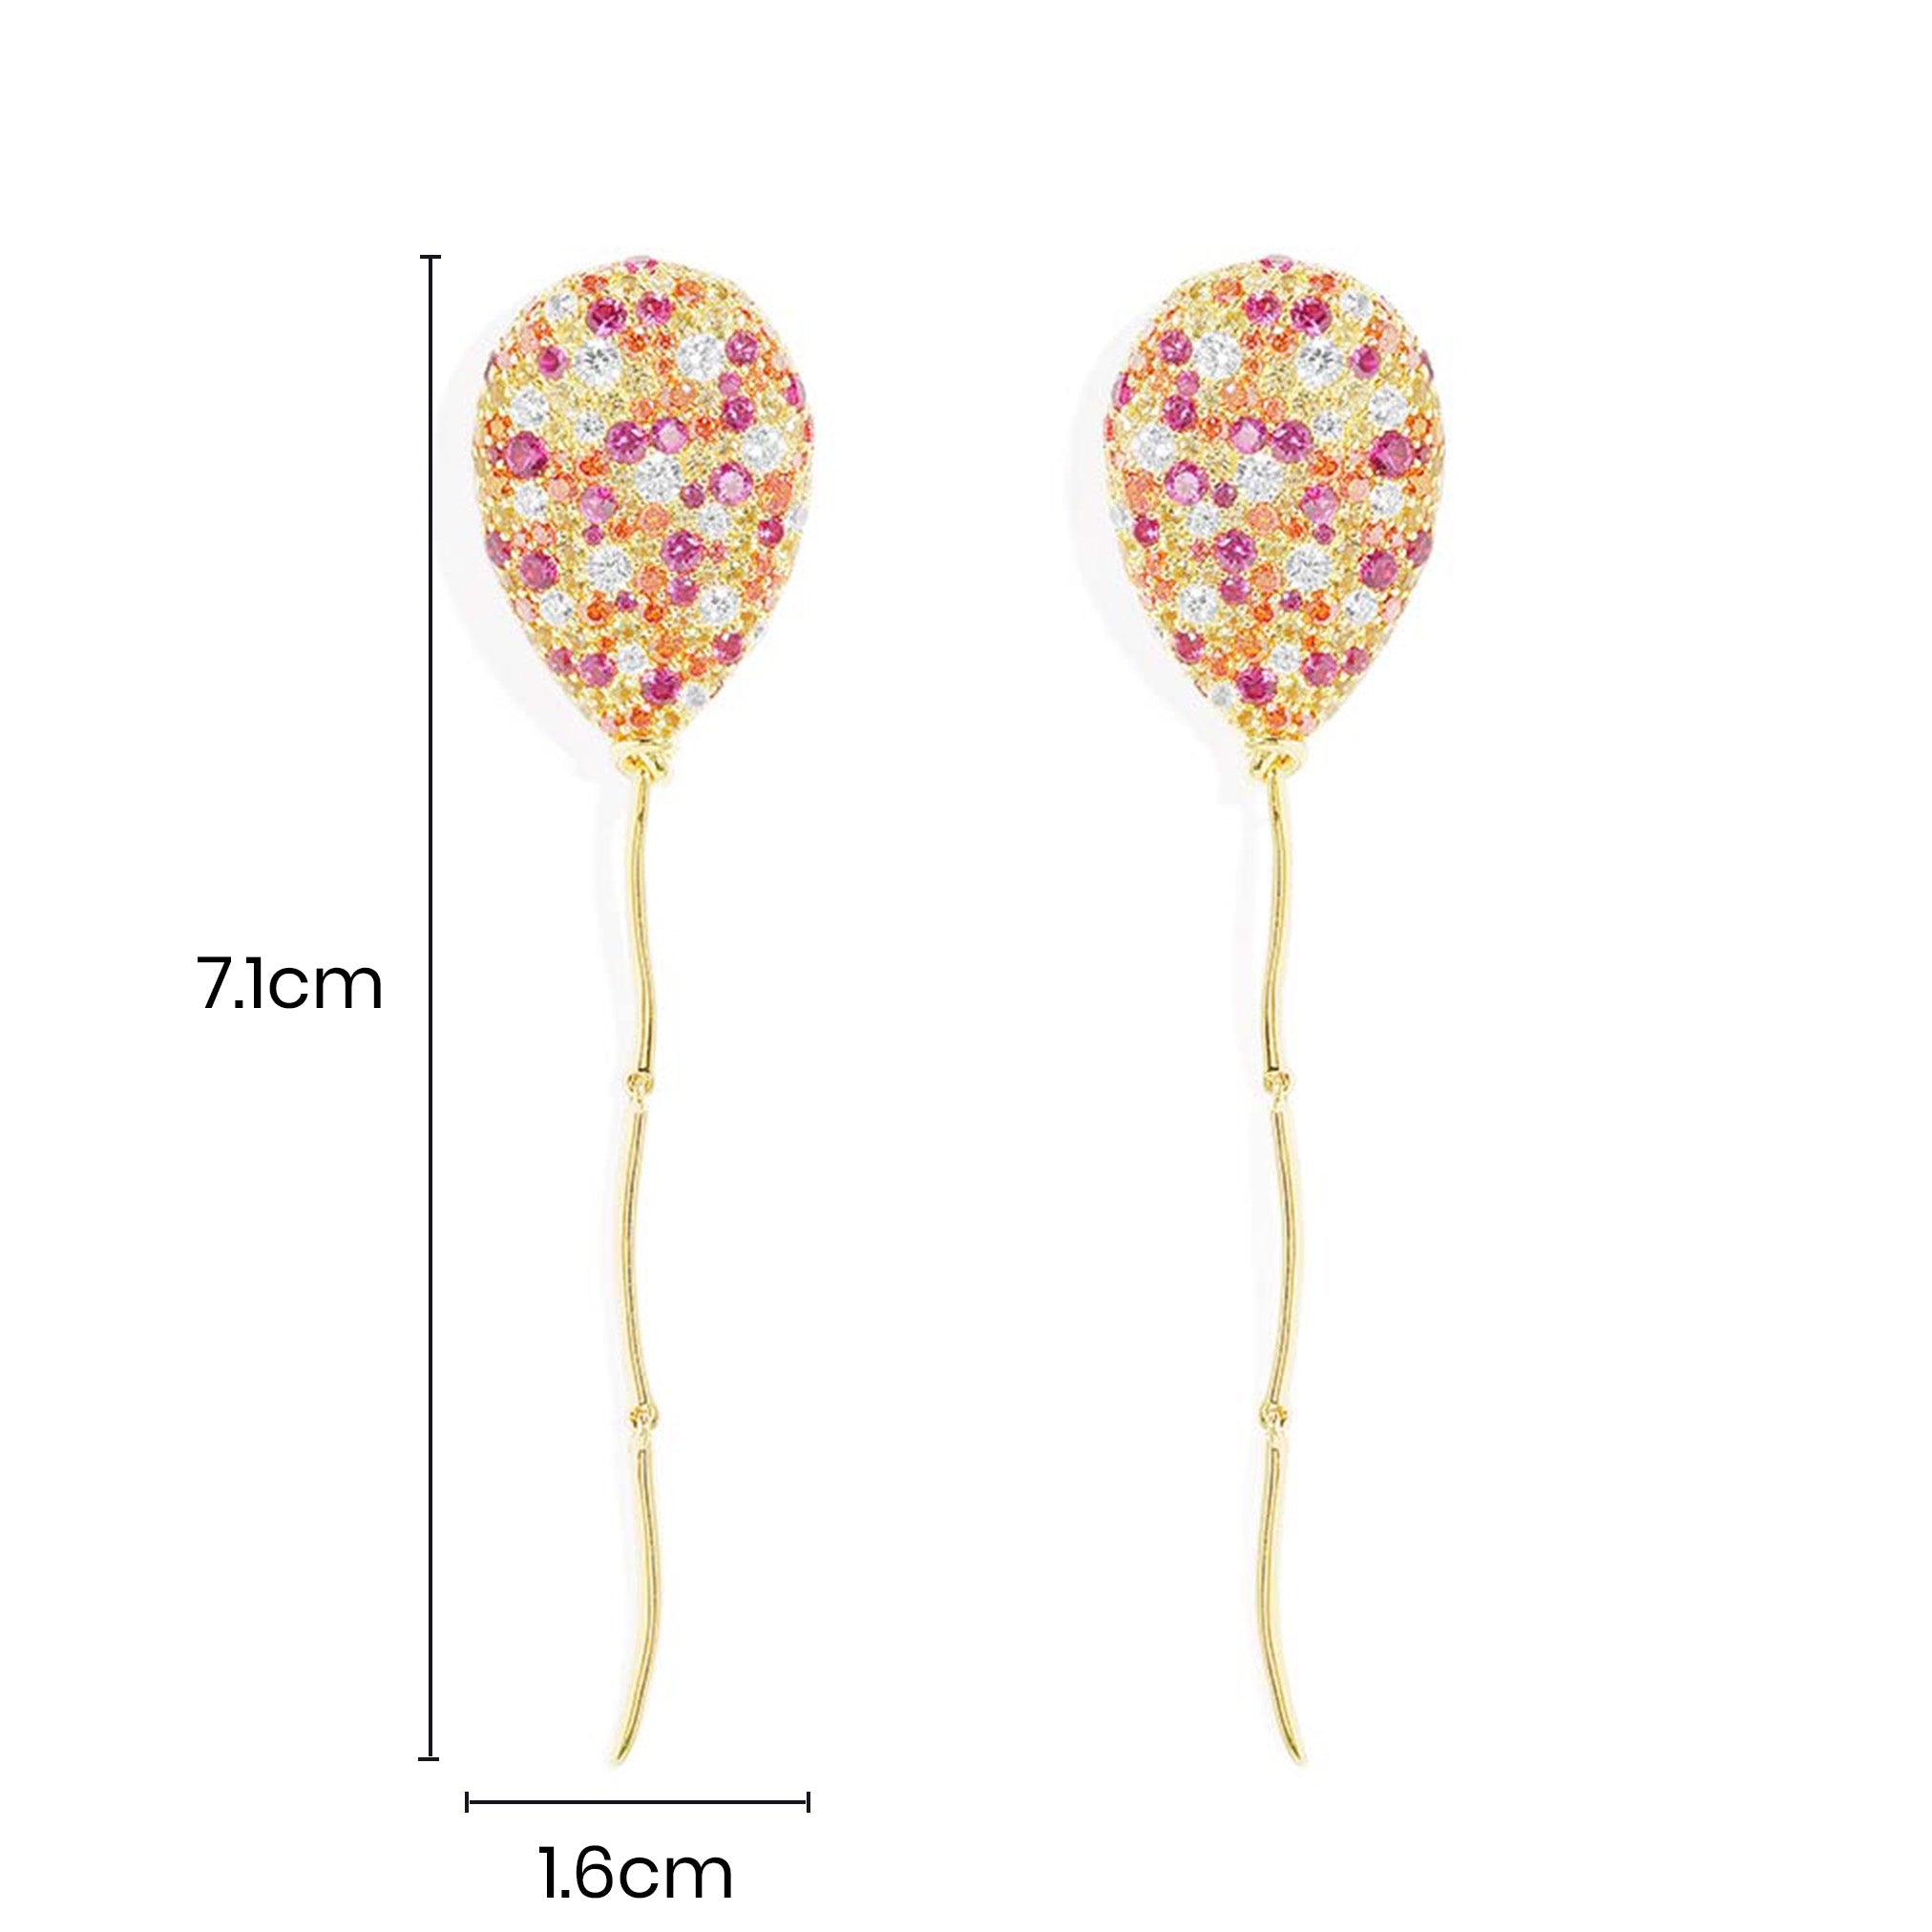 Multicolor Balloon Drop Earrings - APM Monaco